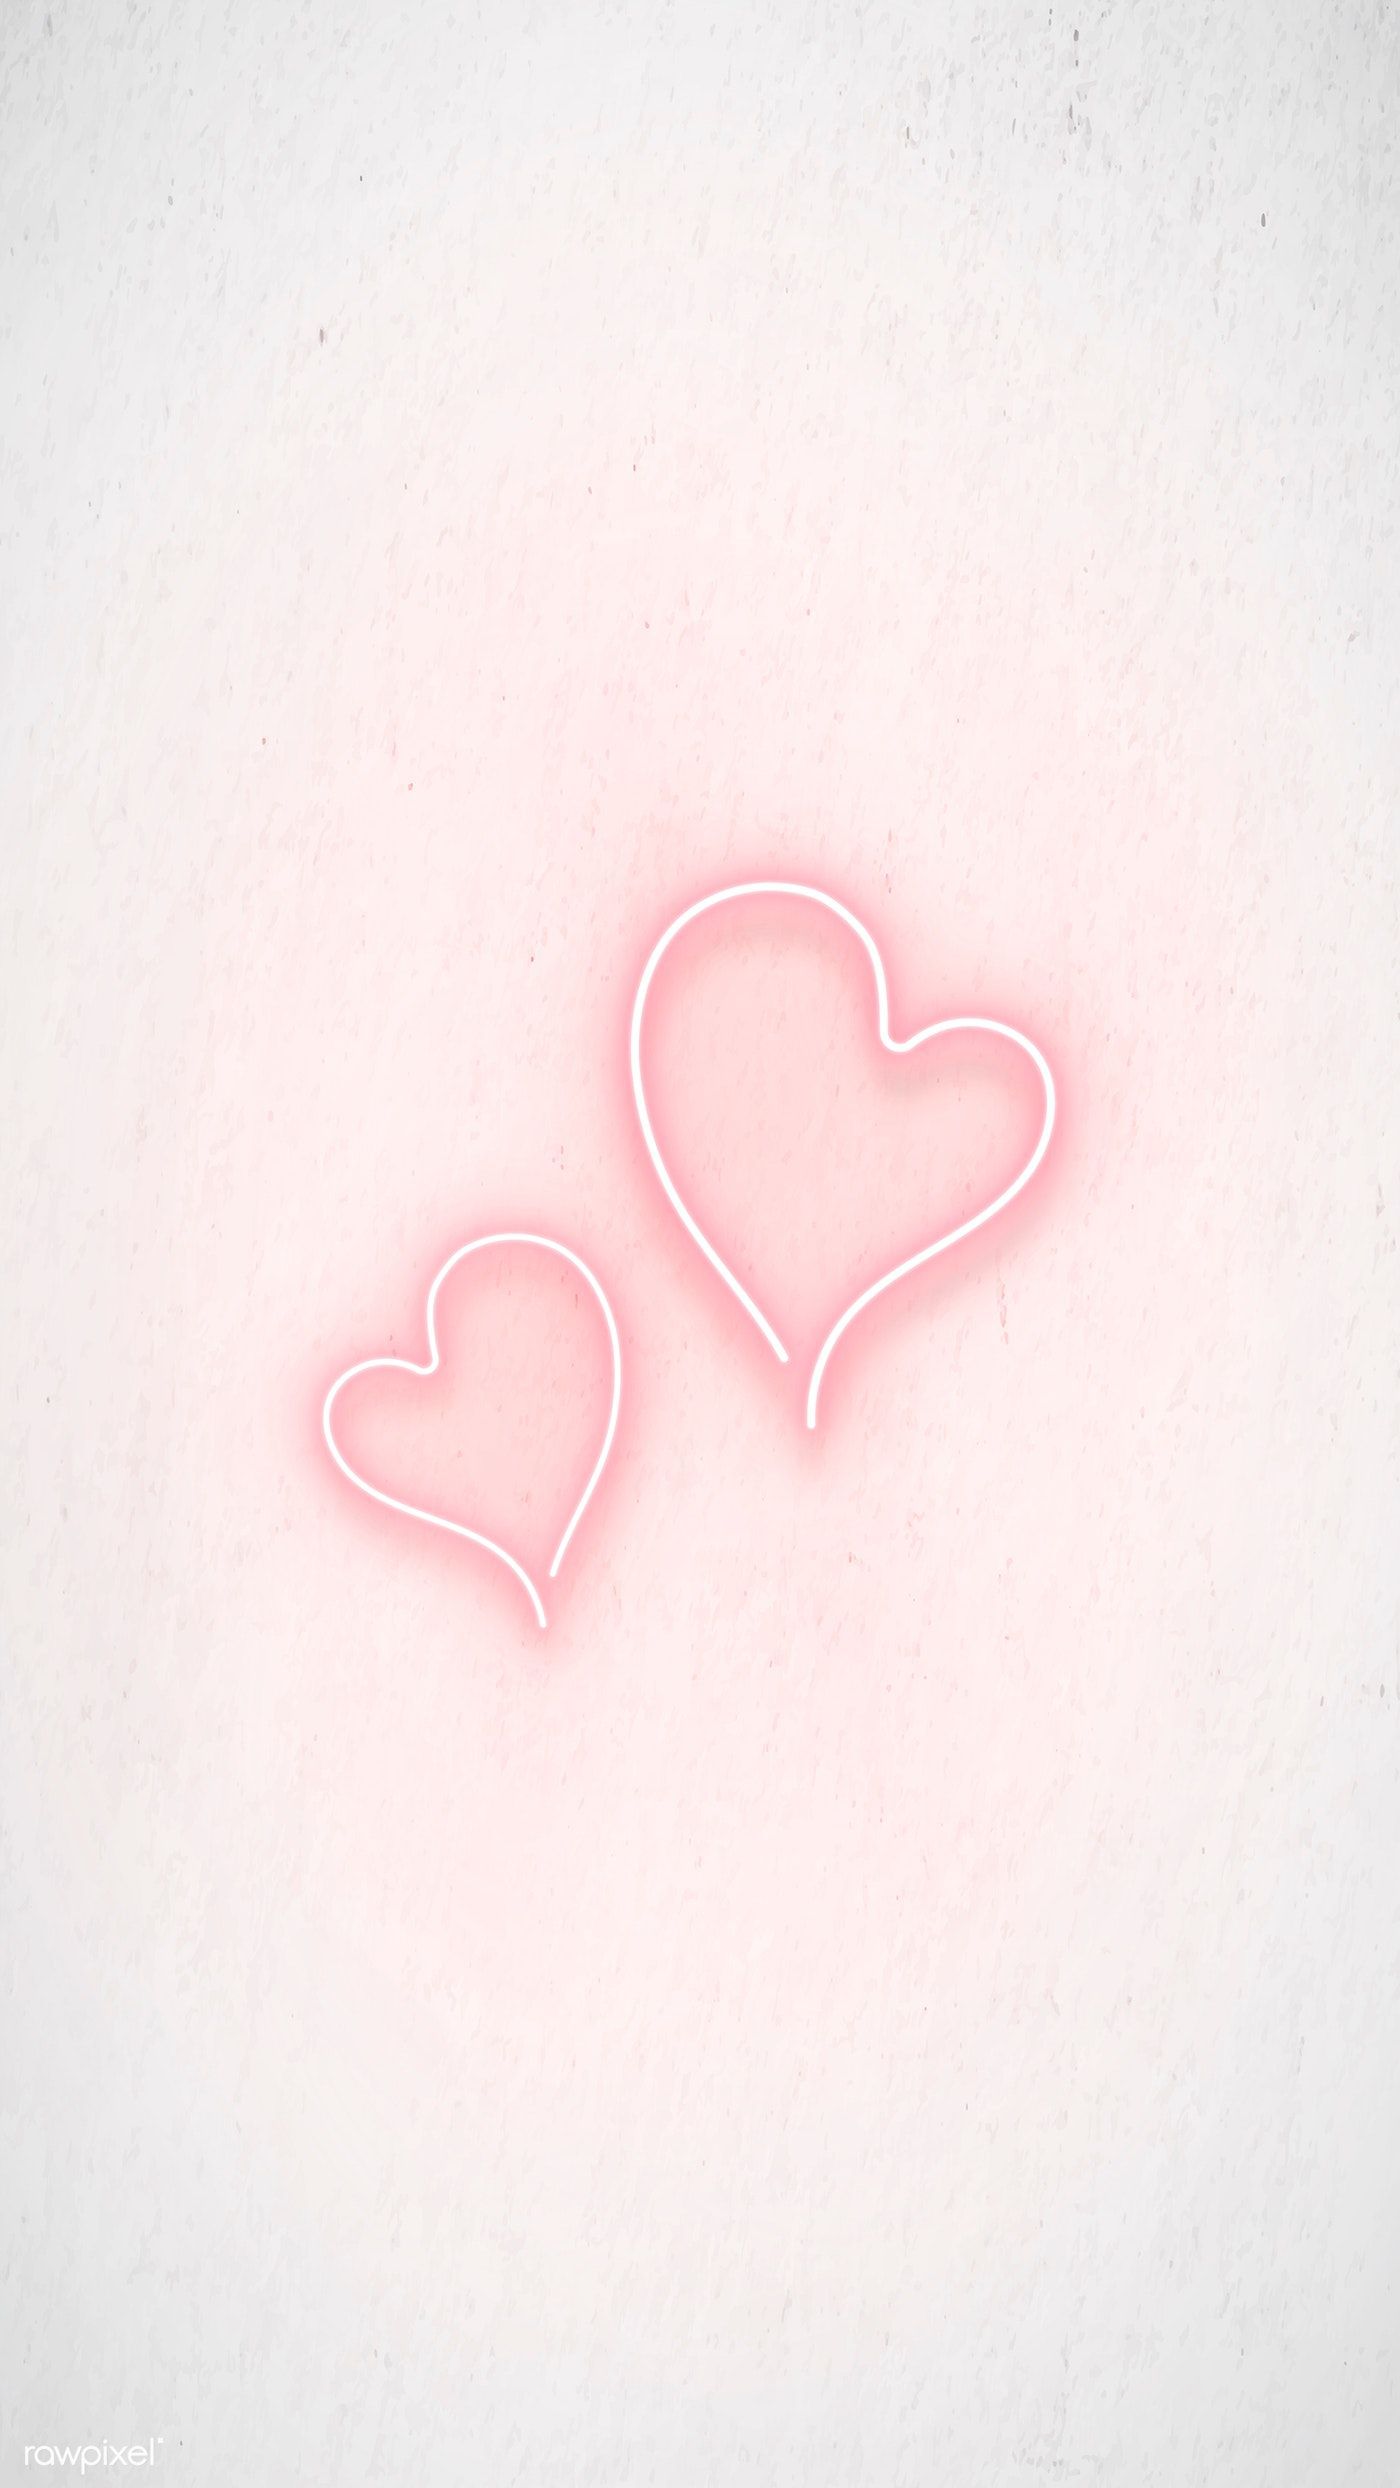 Download premium vector of Pink neon double hearts vector 2093992. Pink wallpaper iphone, iPhone wallpaper tumblr aesthetic, Aesthetic iphone wallpaper